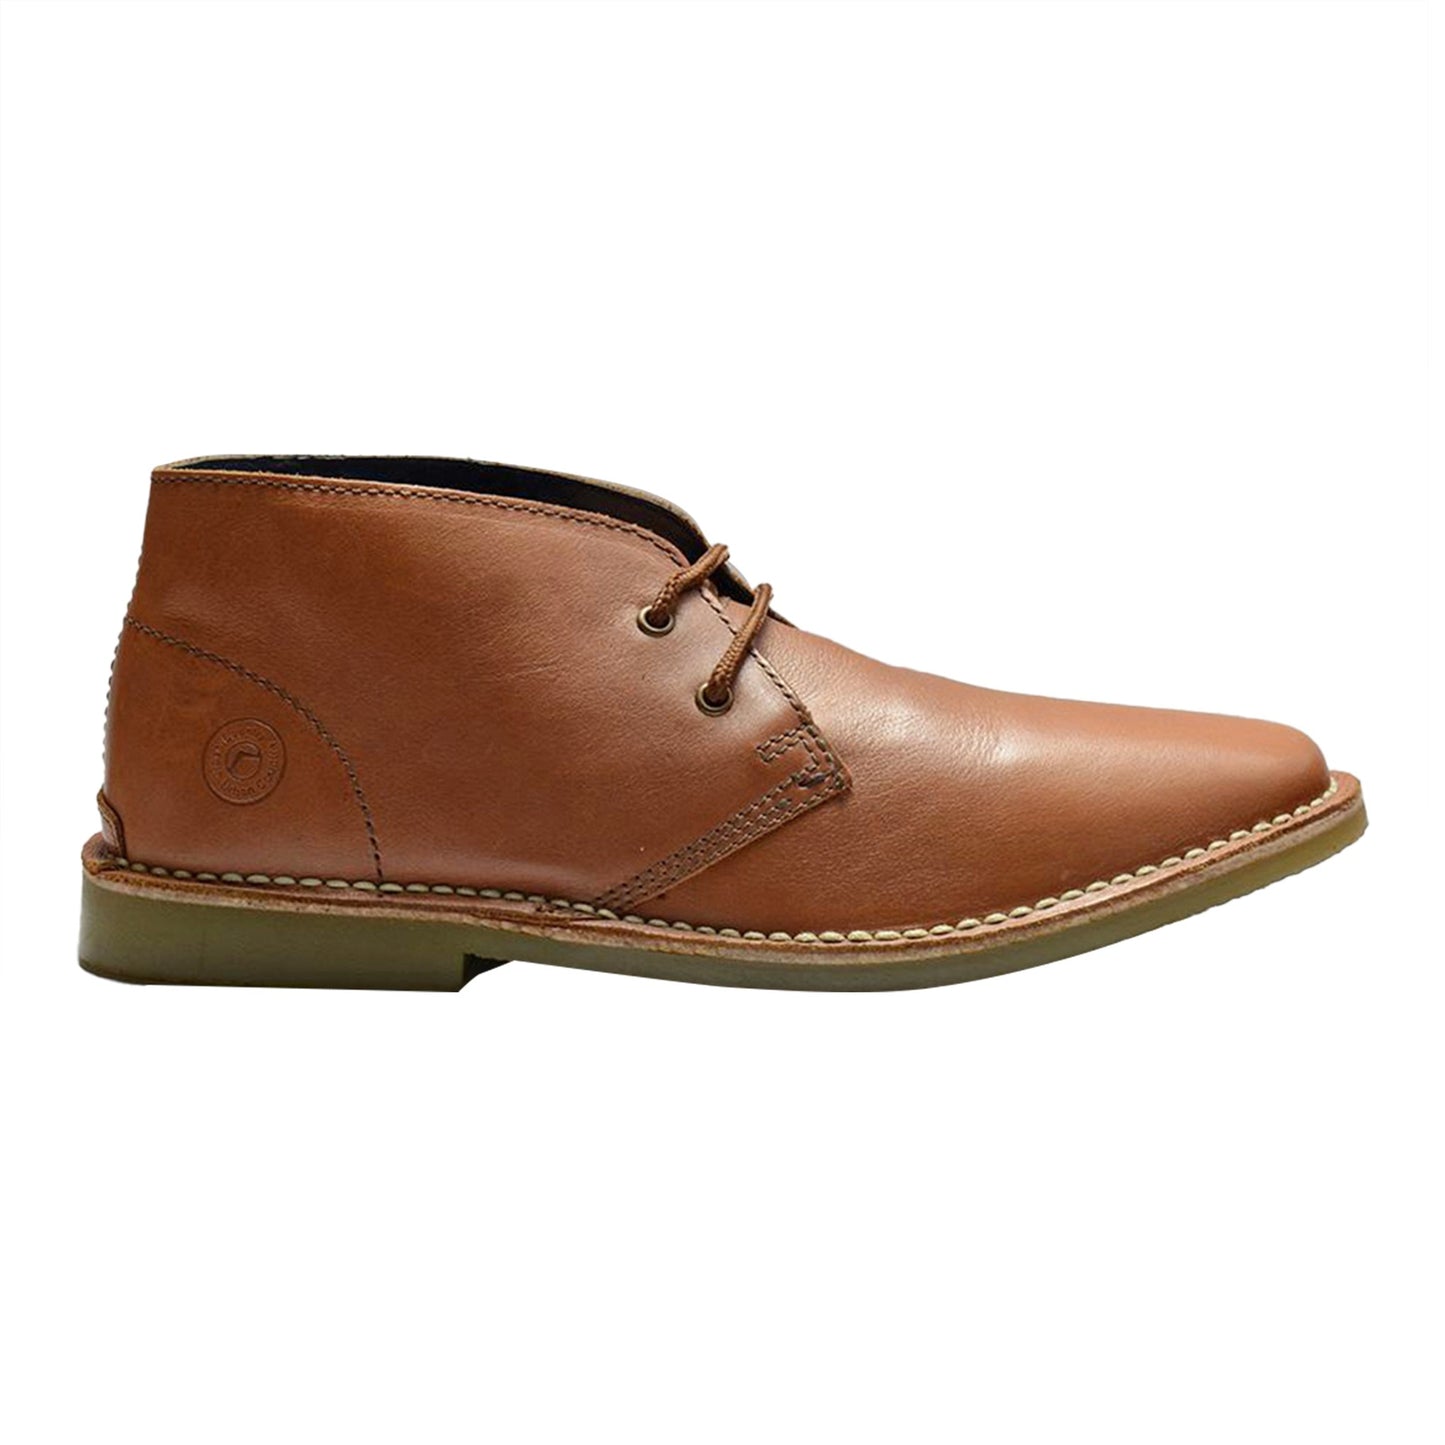 Men Leather Ankle Length Desert Boots ǀ DESERT 4785